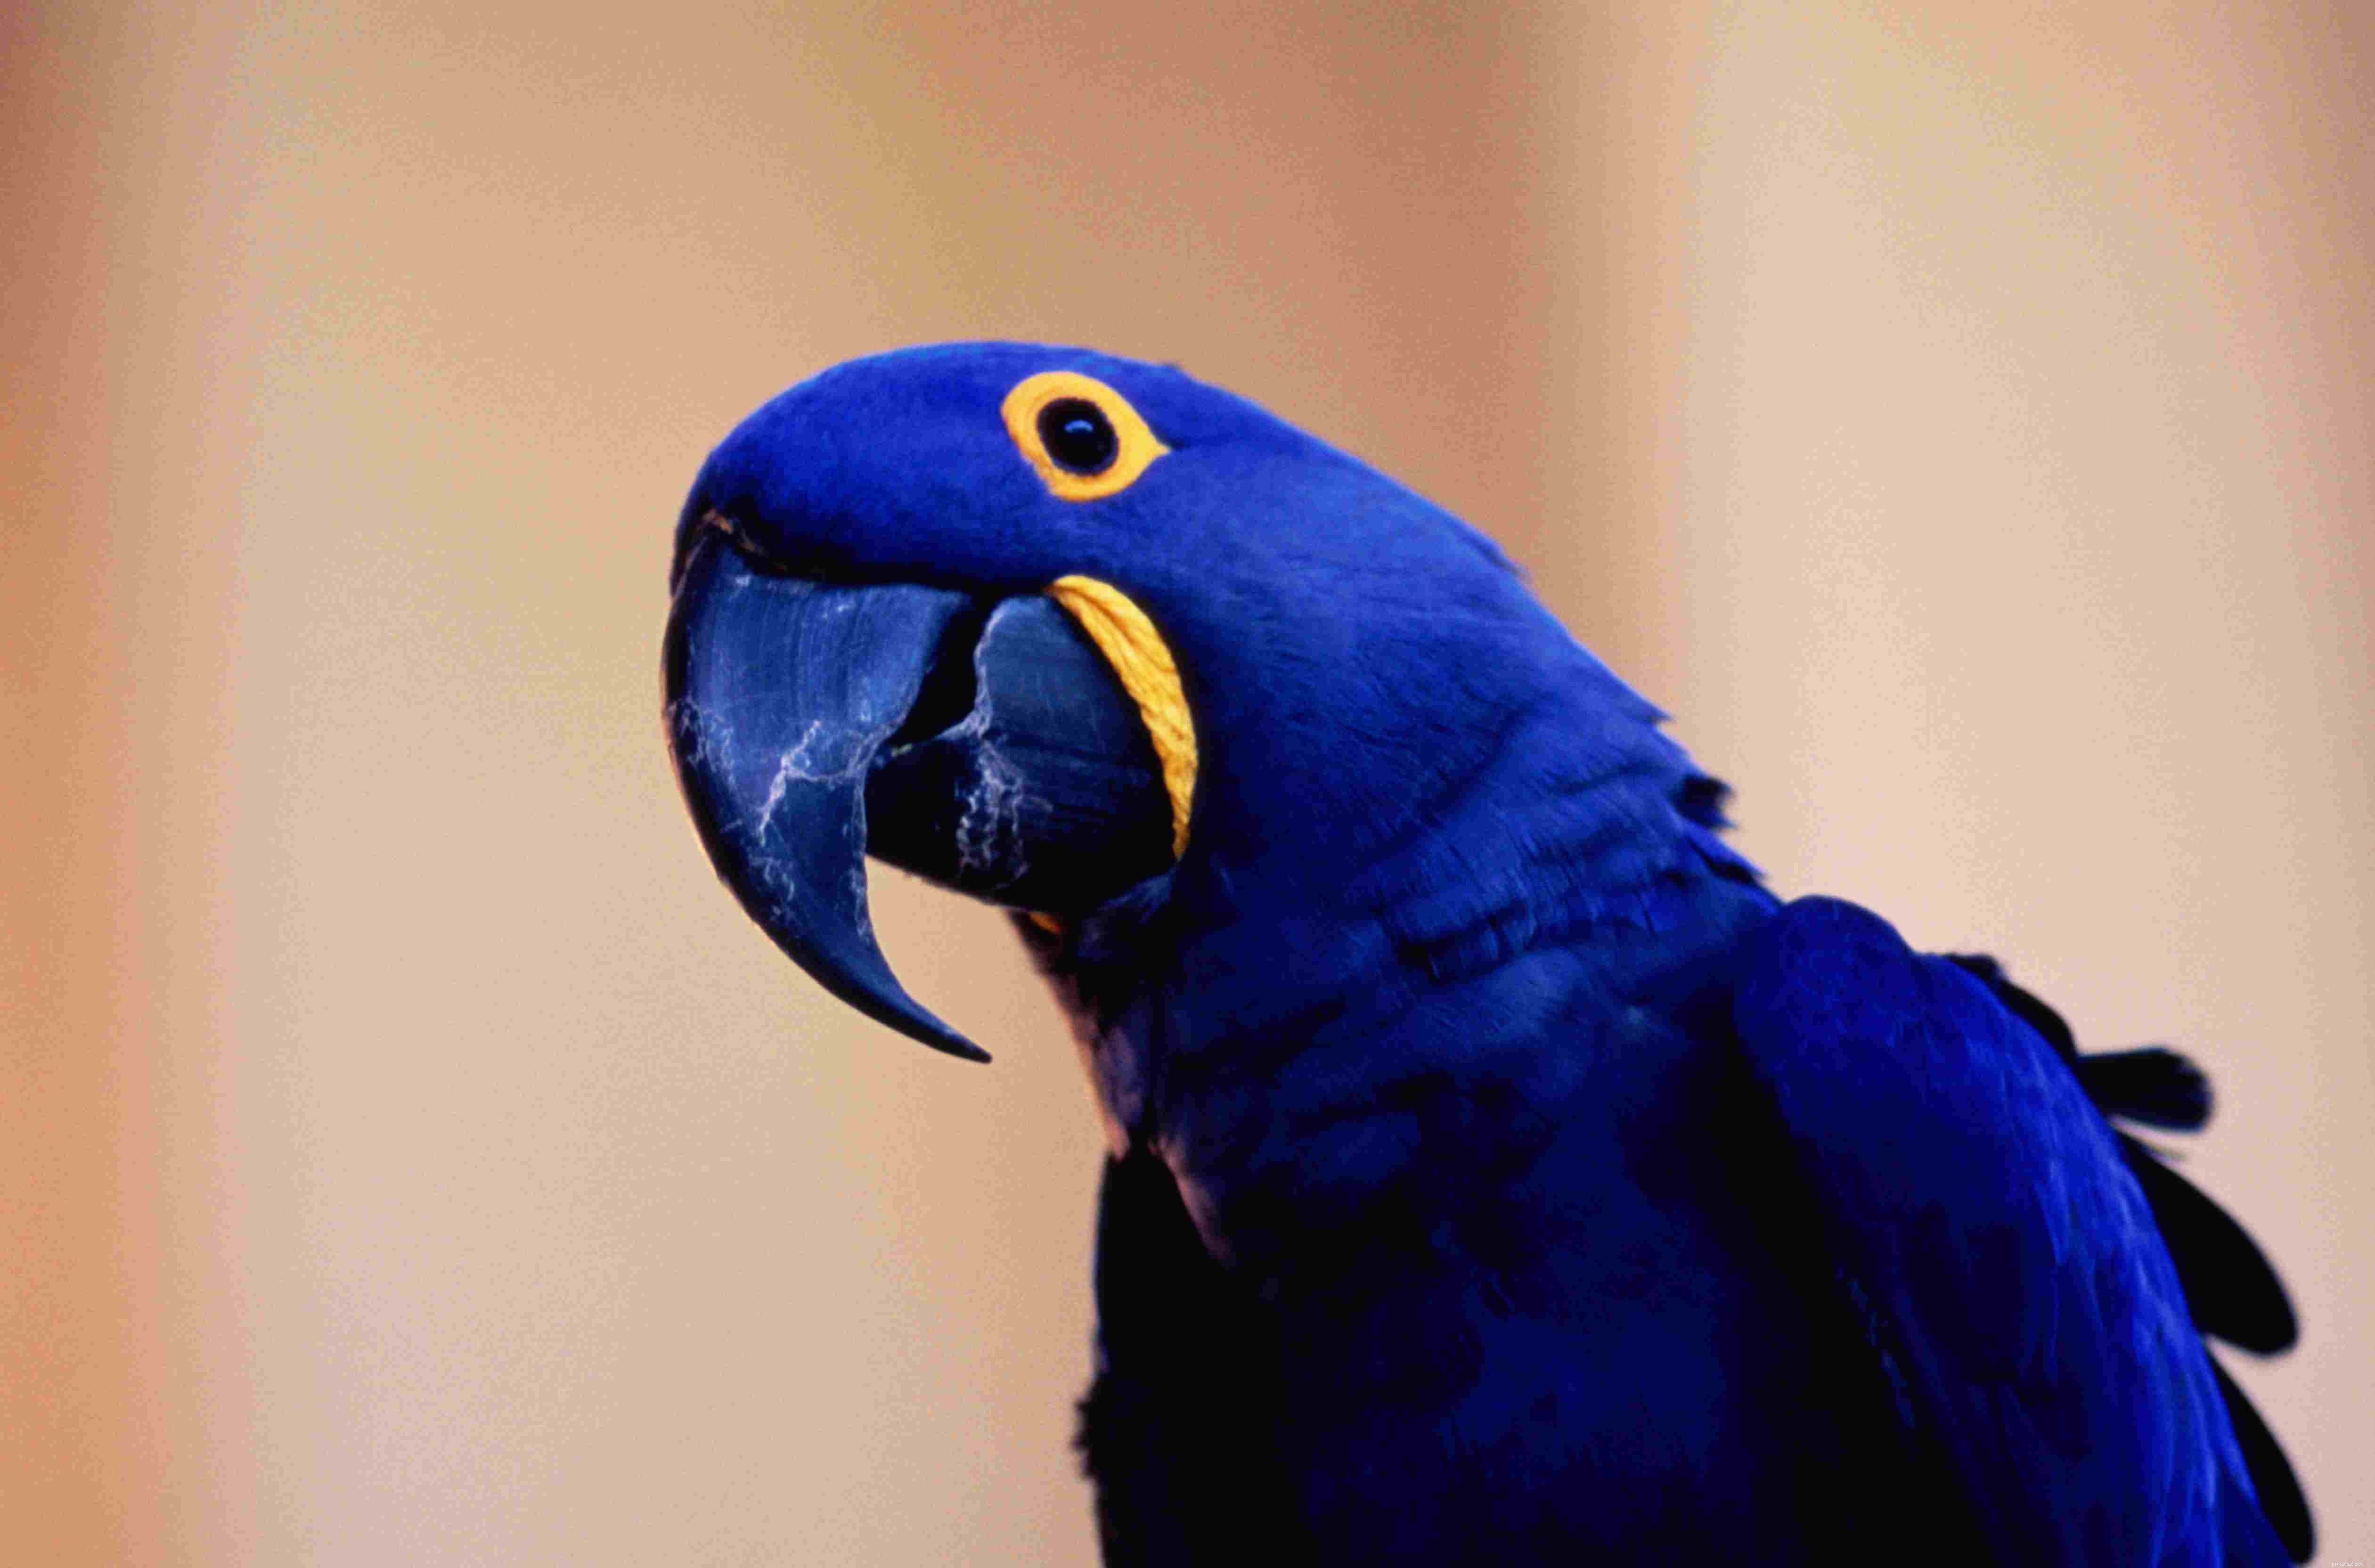 애완 동물로 키우기 좋은 푸른 앵무새 8종